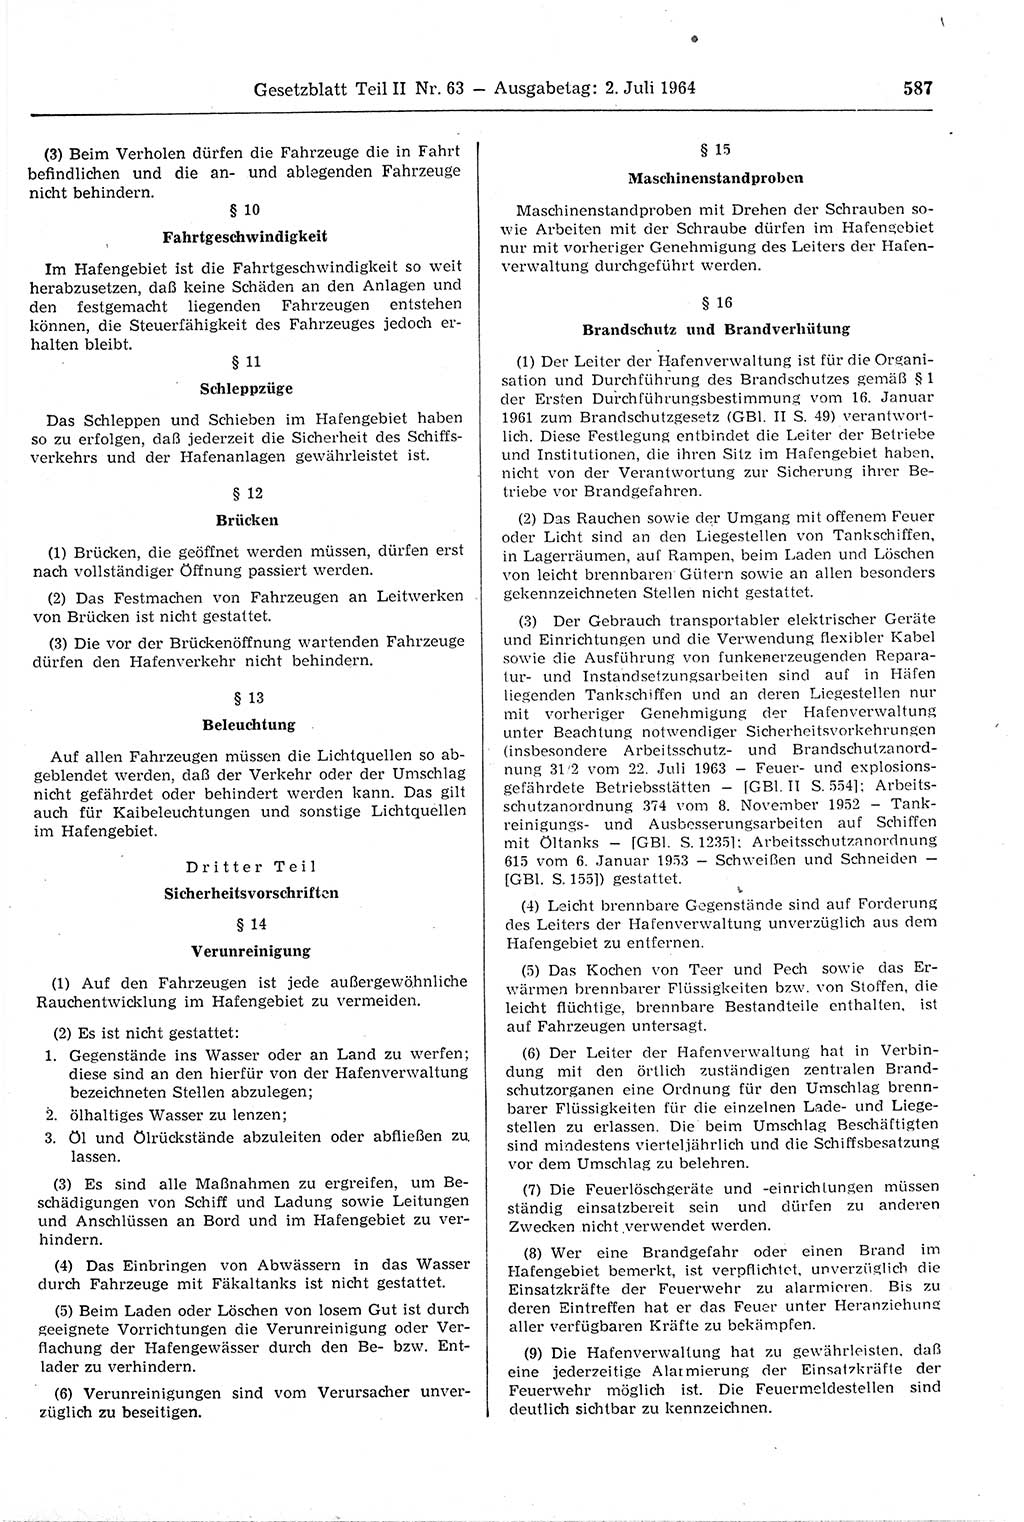 Gesetzblatt (GBl.) der Deutschen Demokratischen Republik (DDR) Teil ⅠⅠ 1964, Seite 587 (GBl. DDR ⅠⅠ 1964, S. 587)